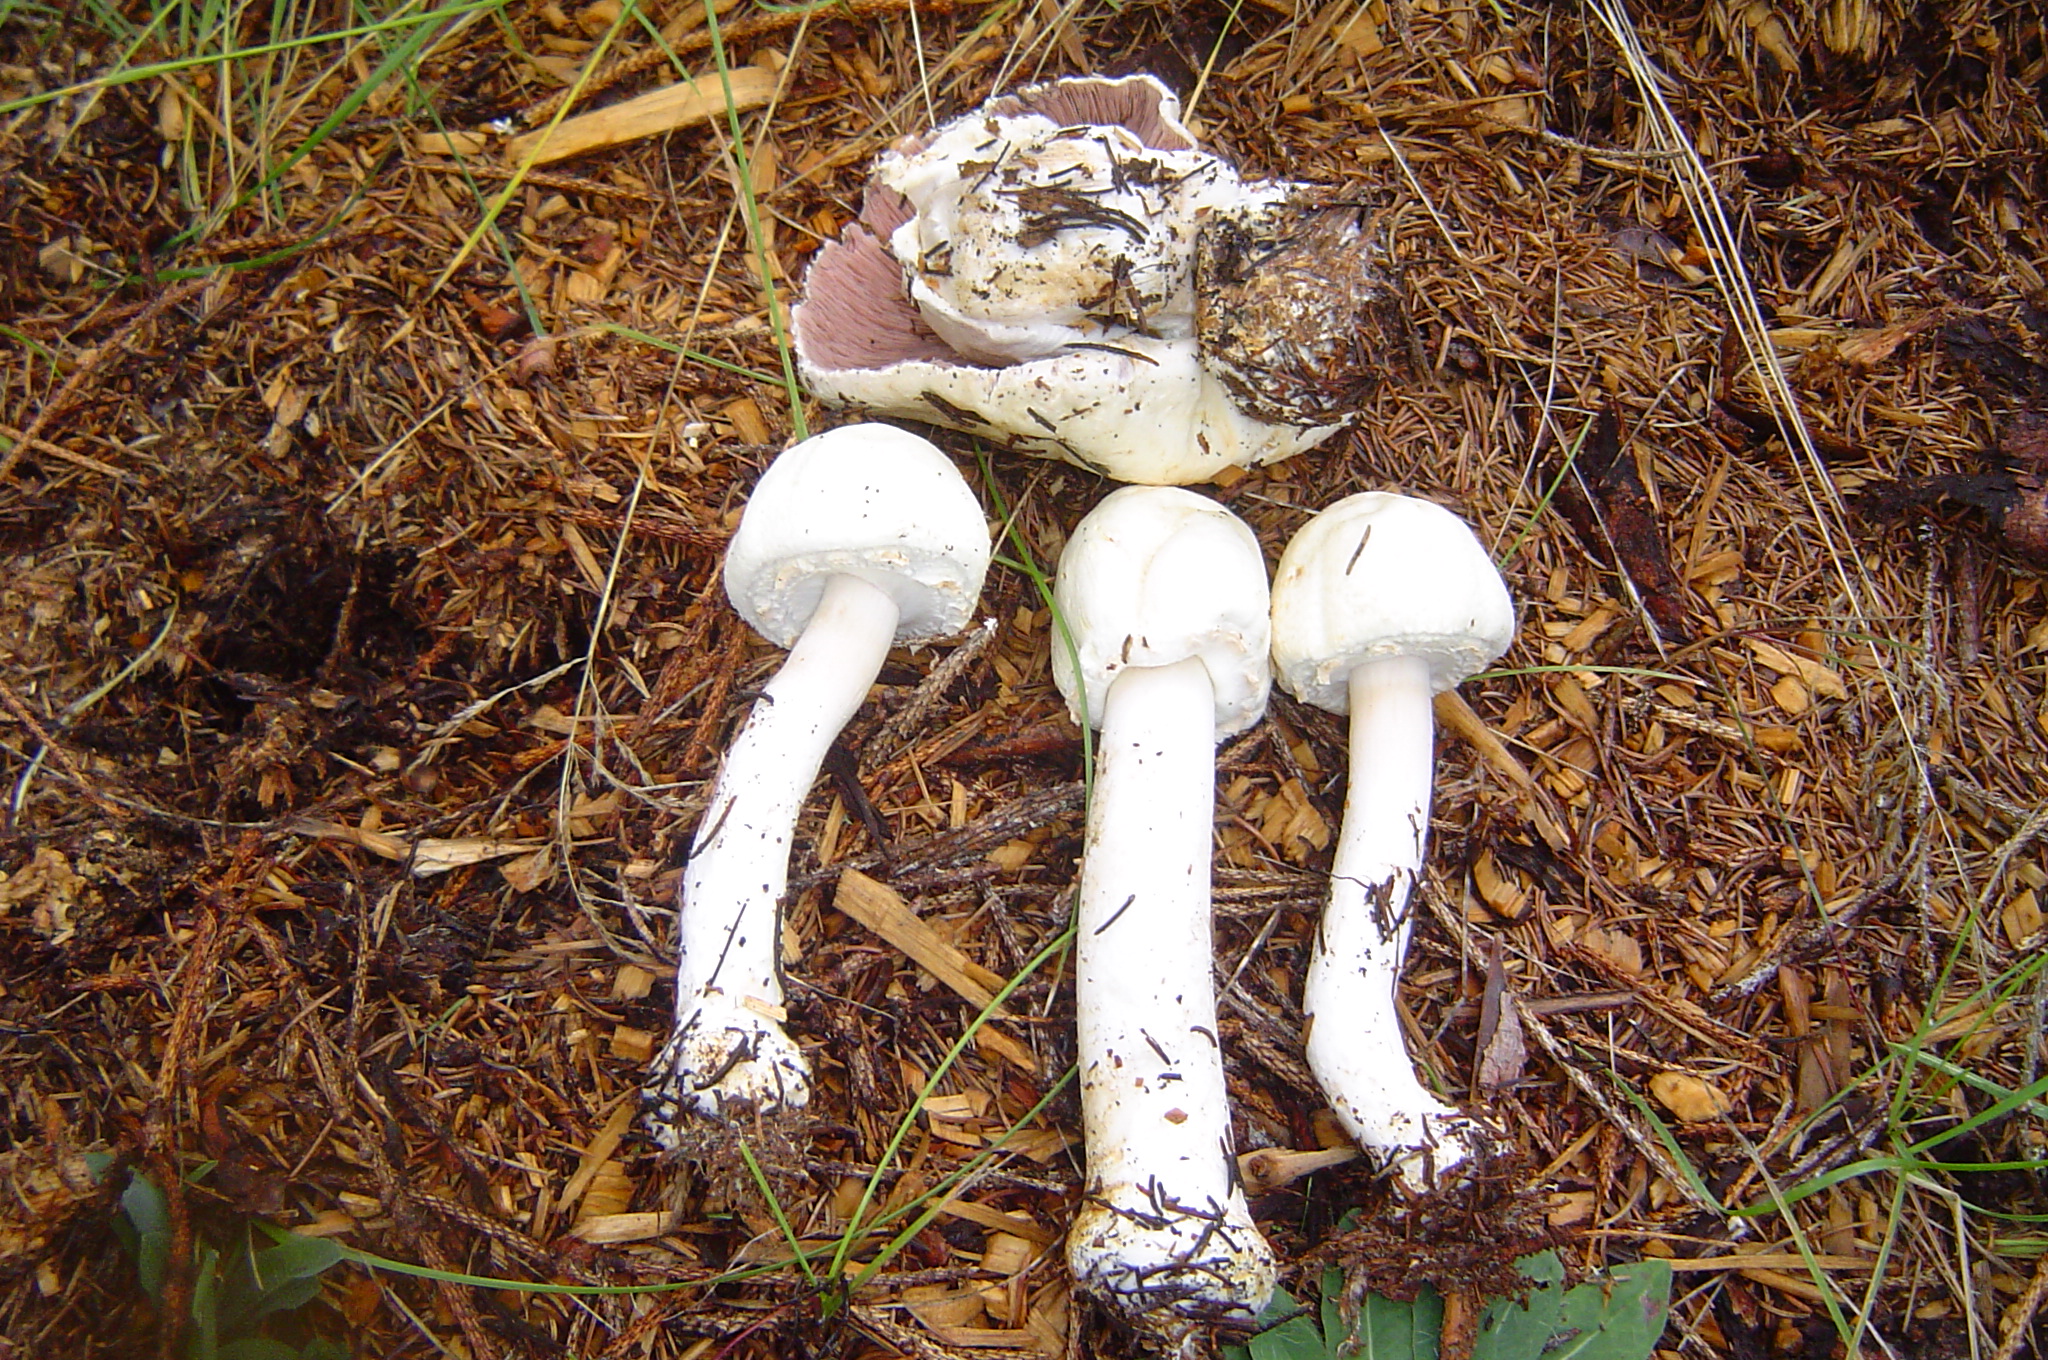 Шампиньон перелесковый (agaricus silvicola): фото, описание, как готовить гриб